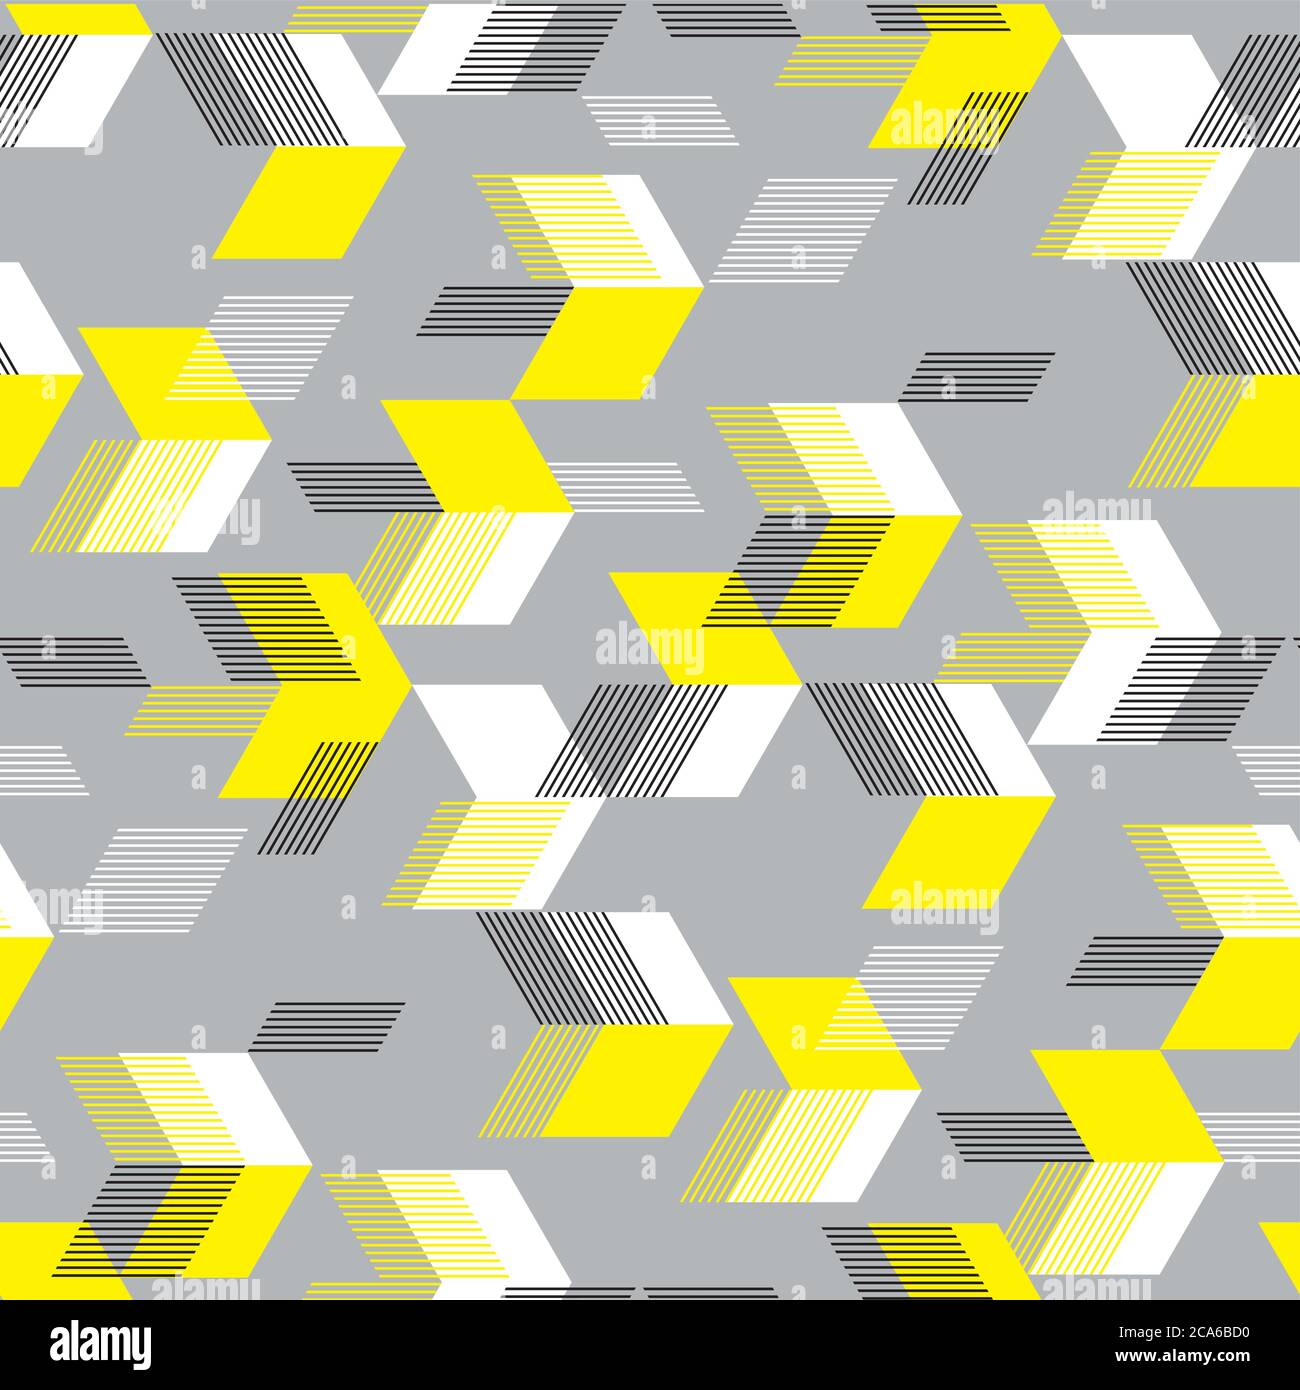 Neongelbe Pfeile auf grauem nahtlosem Muster für Hintergrund, Stoff, Textil, Wrap, Oberfläche, Web und Print-Design. Konzept dynamische Fliesengestaltung für spor Stock Vektor